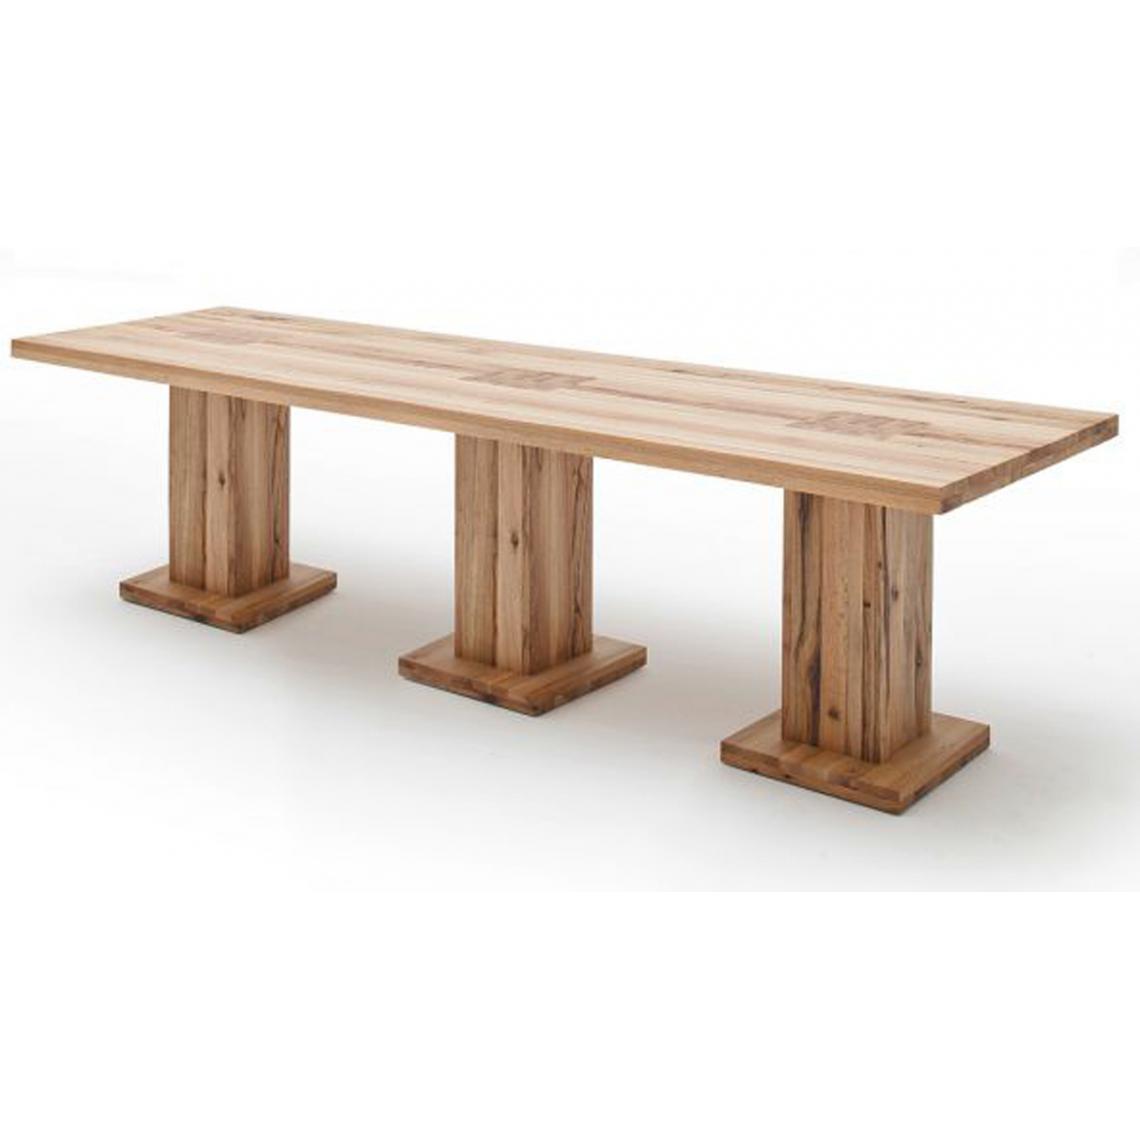 Pegane - Table à manger en chêne sauvage laqué mat - L.300 x H.76 x P.120 cm -PEGANE- - Tables à manger